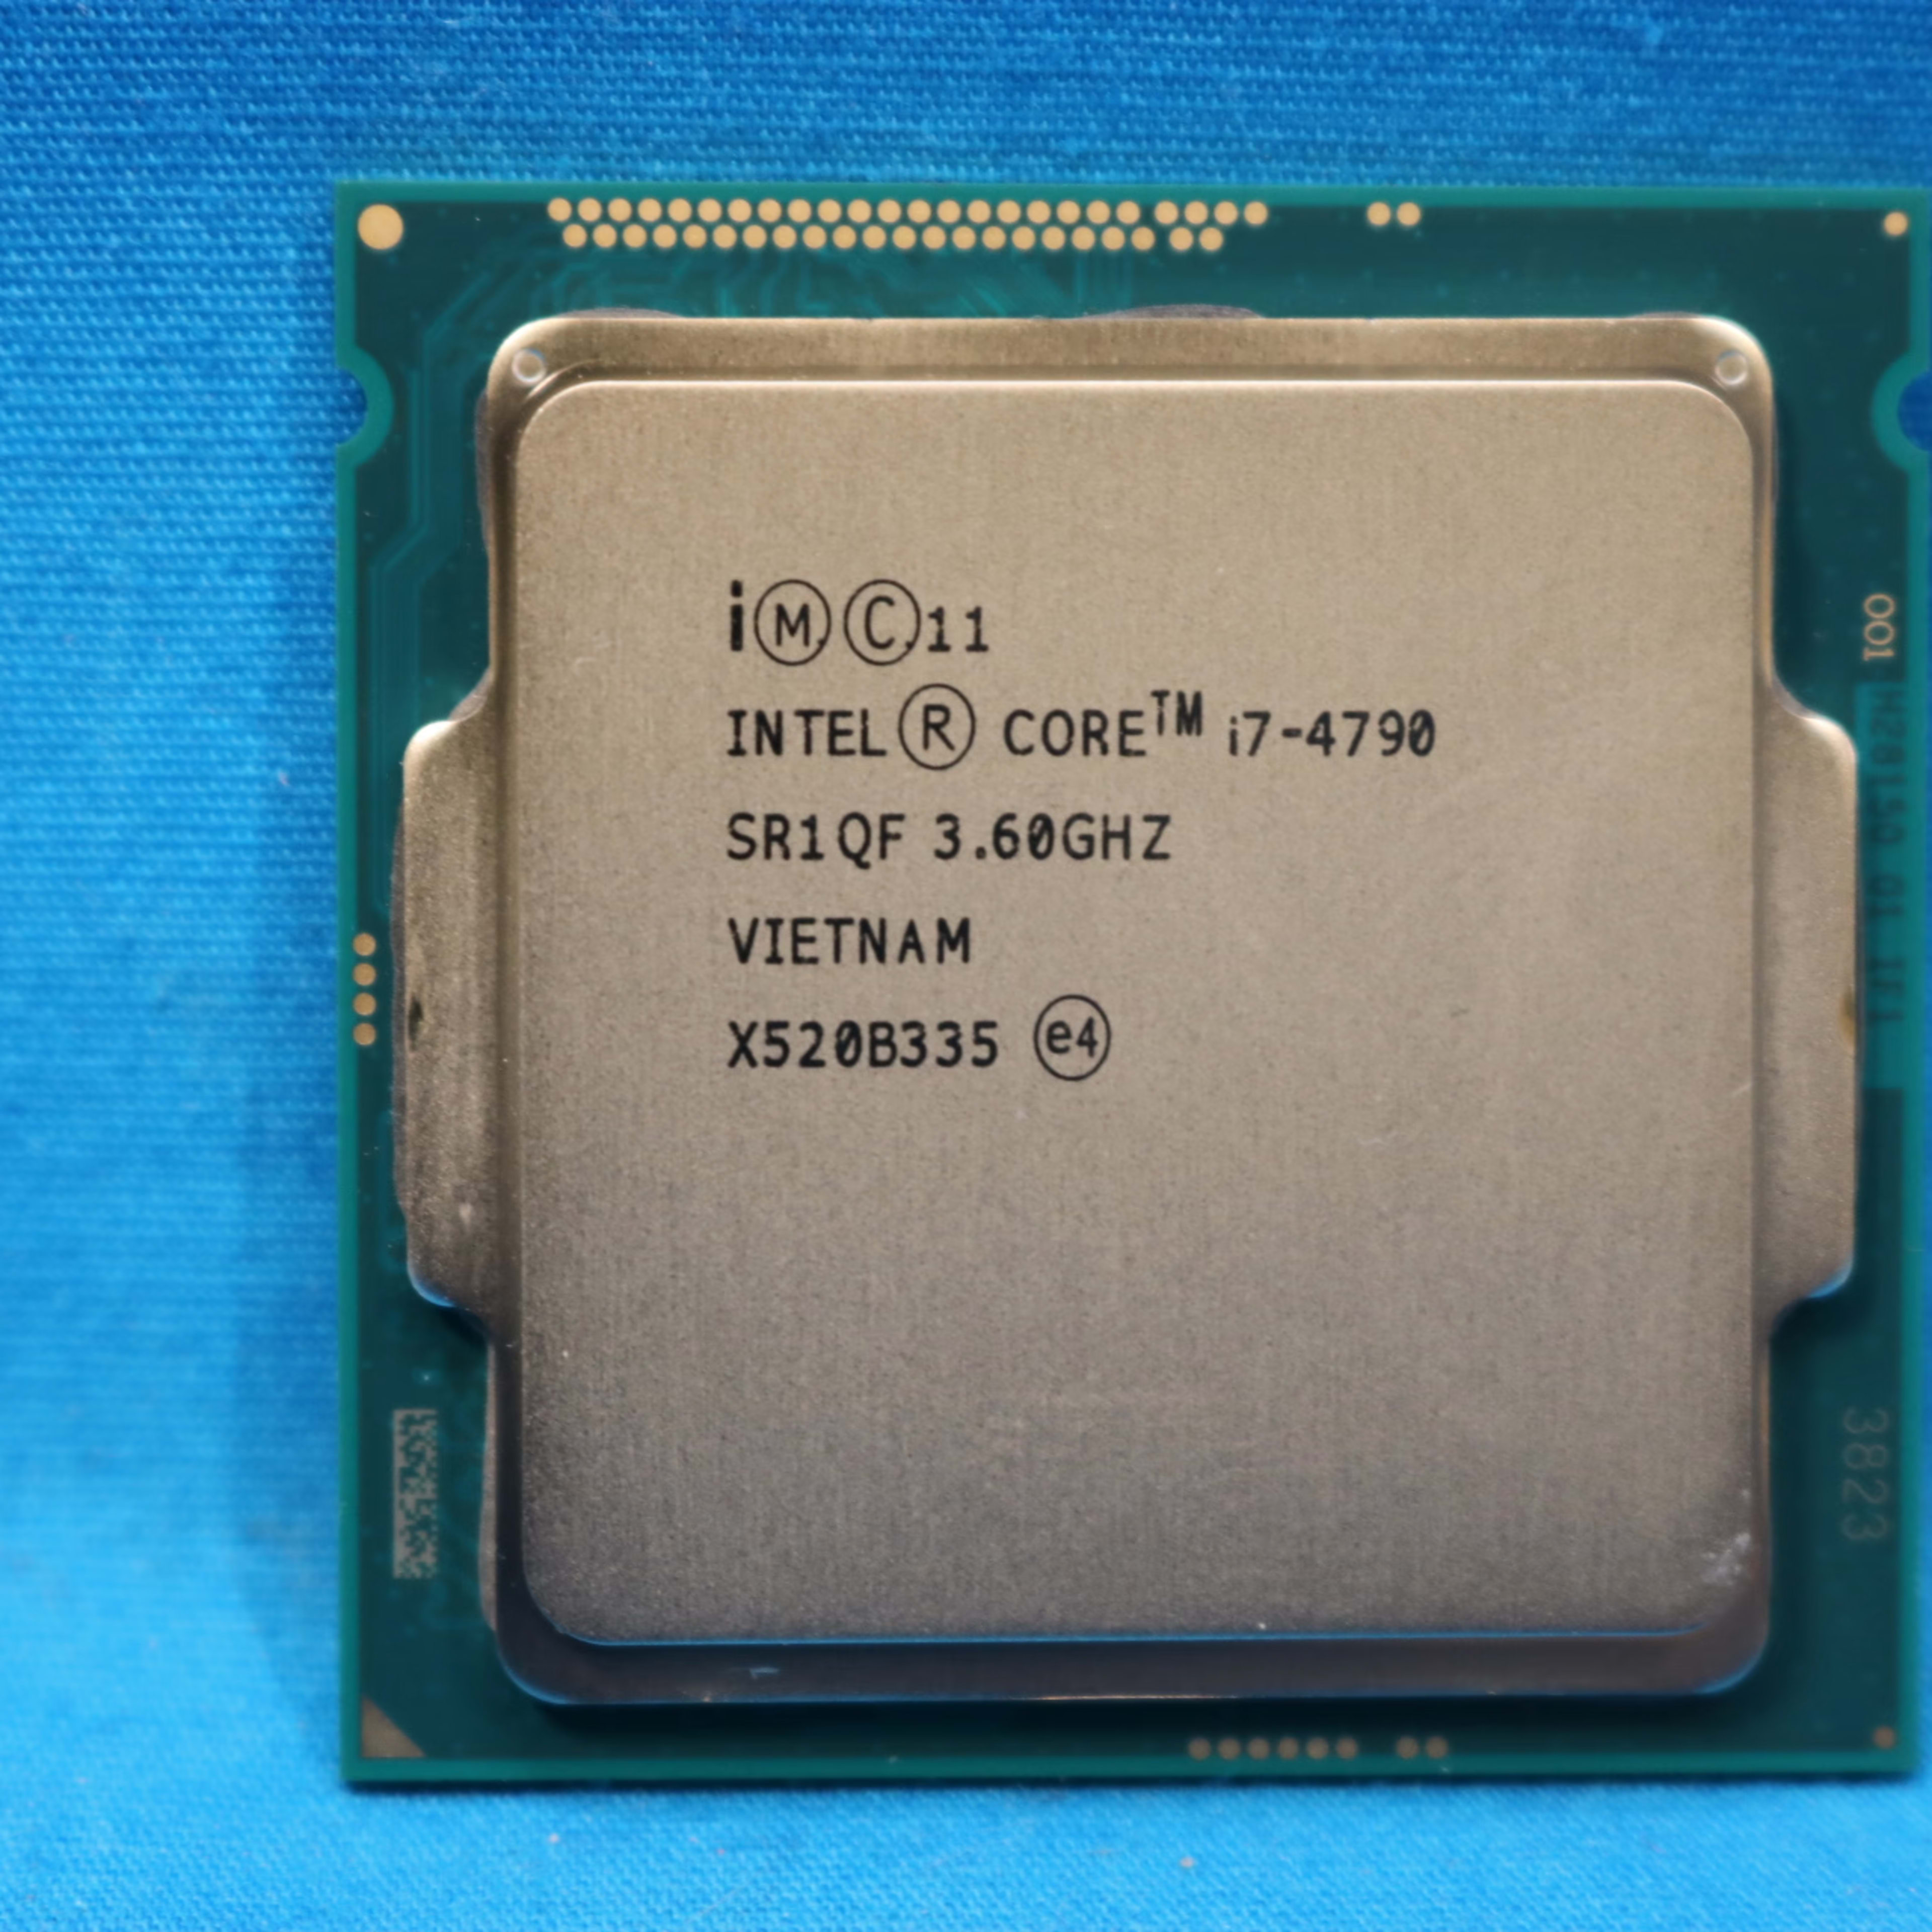  Intel Core i7-4790 Processor 3.6GHz 8MB LGA 1150 CPU